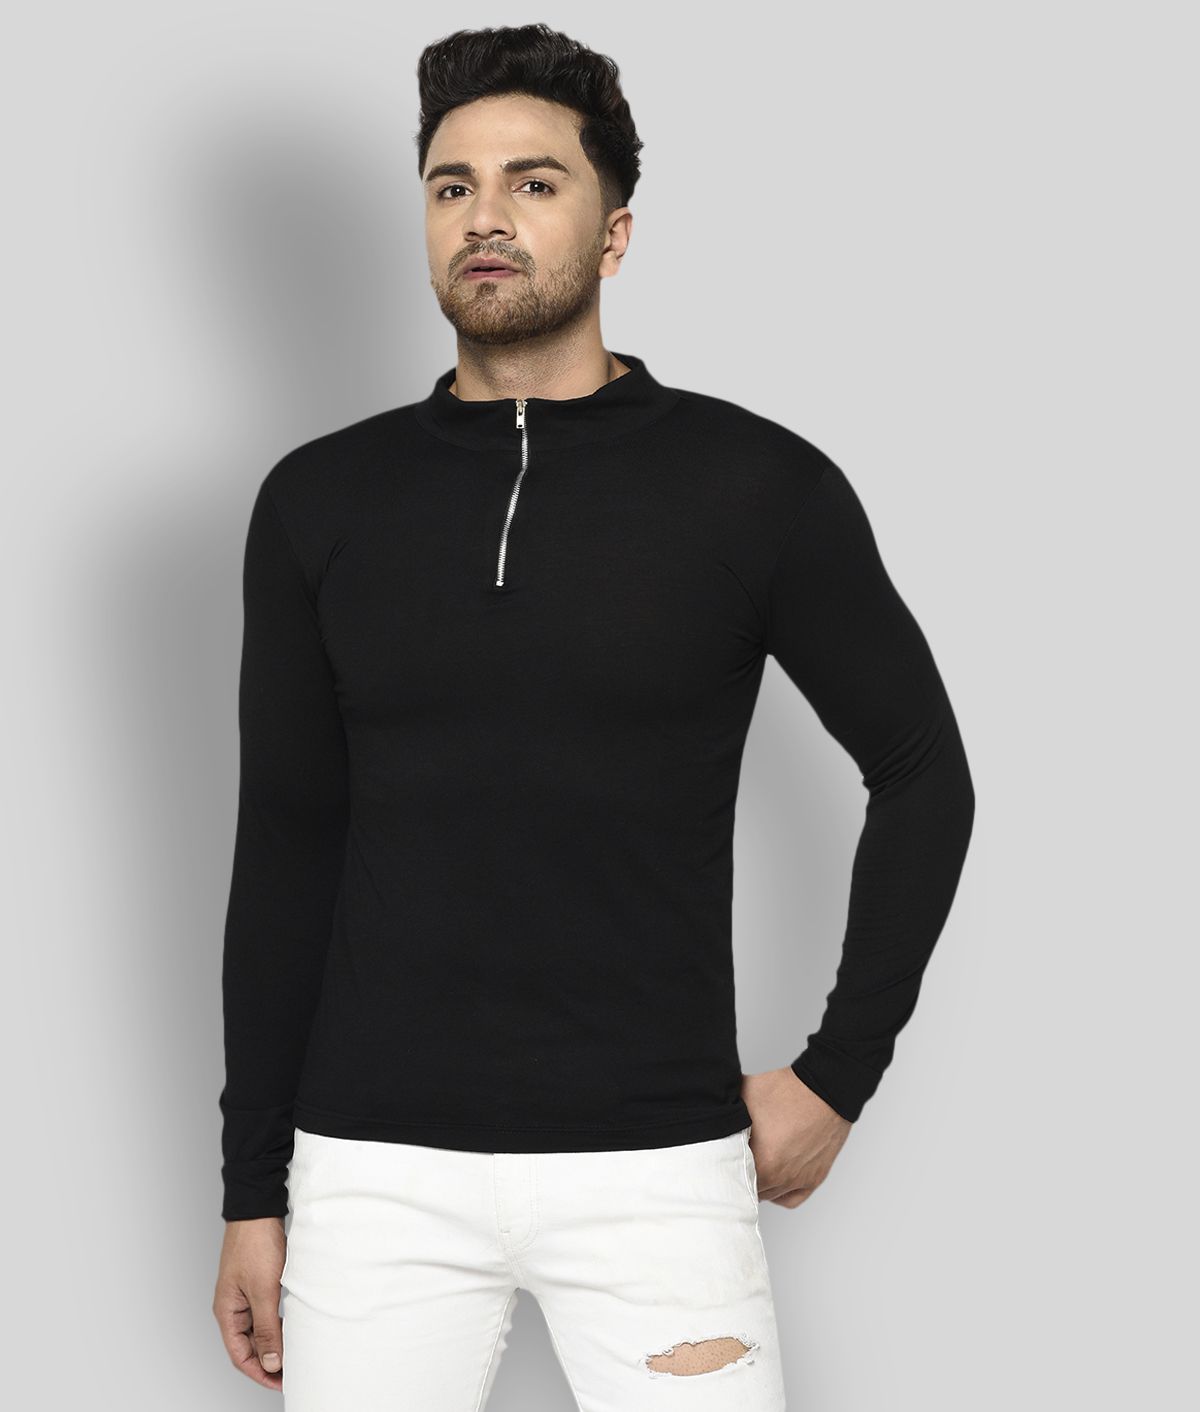 Rigo - Black Cotton Blend Slim Fit Men's T-Shirt ( Pack of 1 )